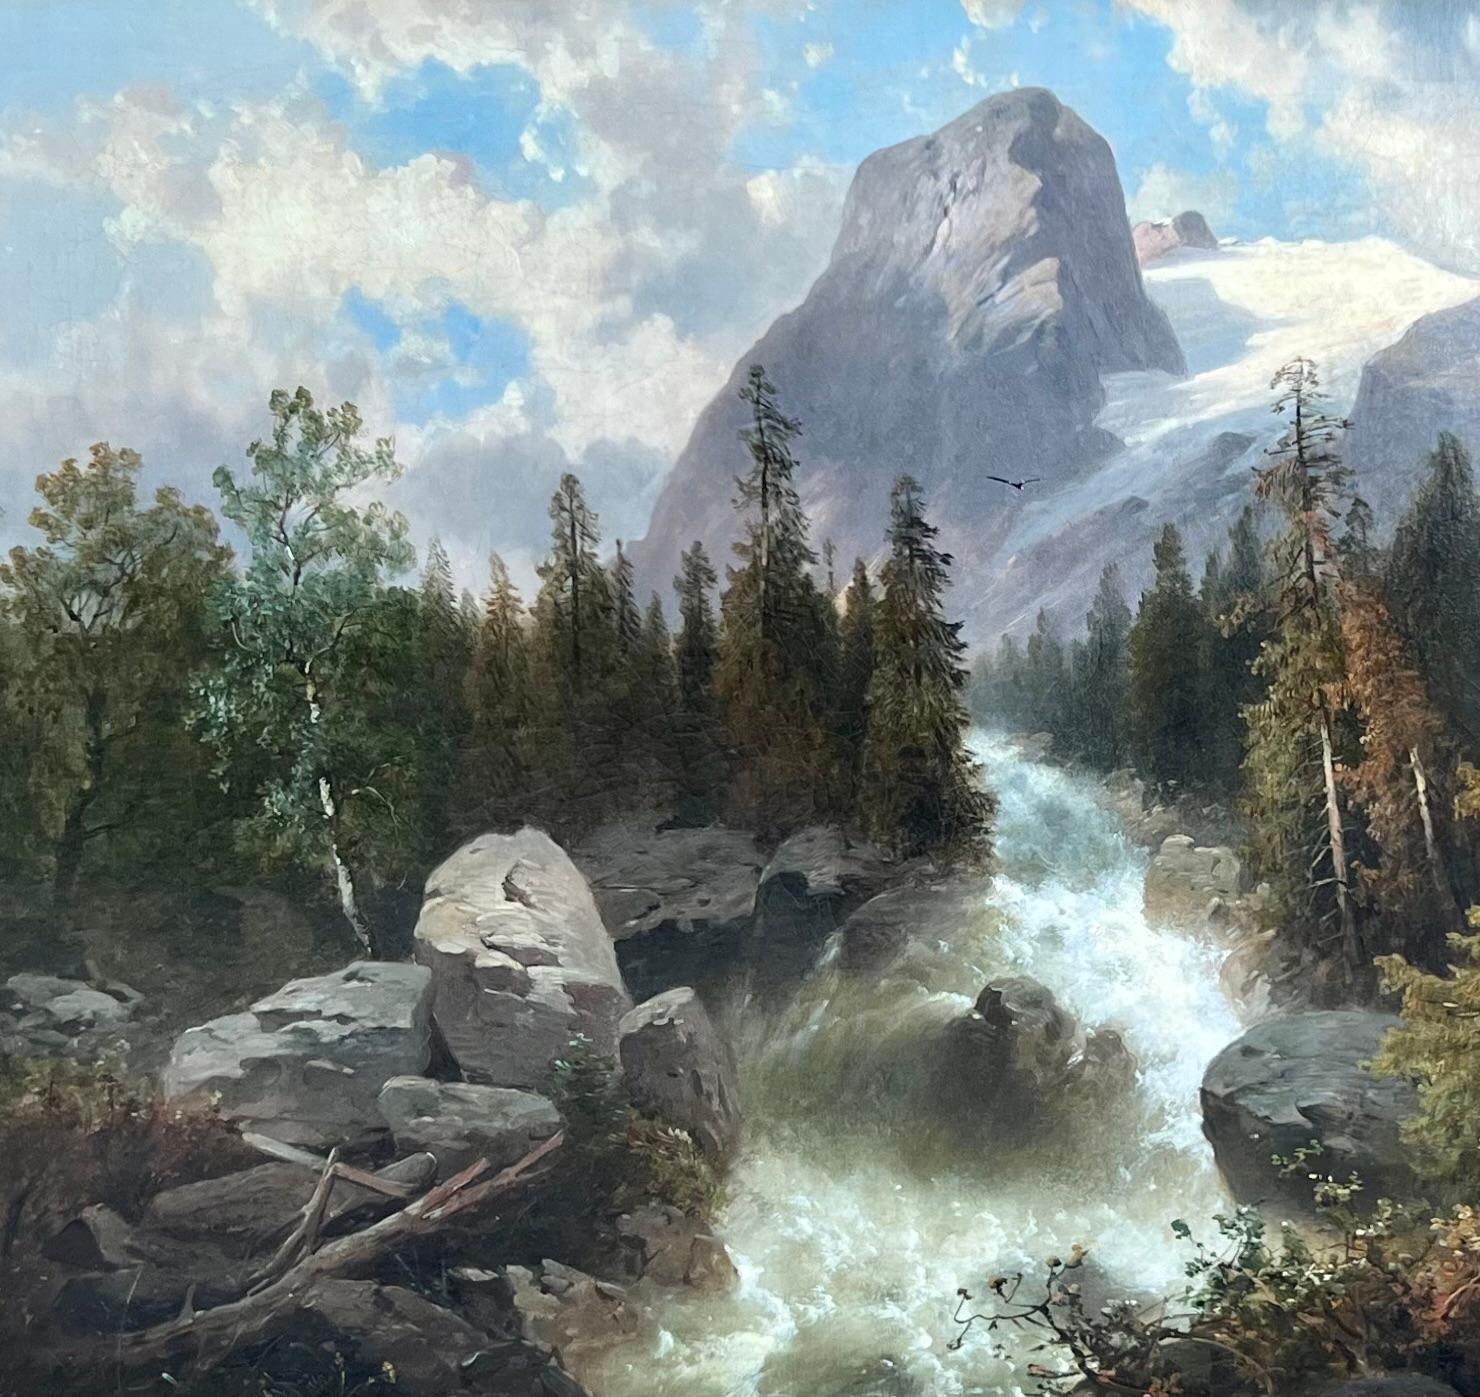 Huile sur toile, signée en bas à droite, représentant une rivière en mouvement rapide sur le côté d'un paysage montagneux. 

Josef Thoma, fils de Josef Thoma père (Vienne 1800- ?) est né le 28 septembre 1828 à Vienne.

Il a probablement été